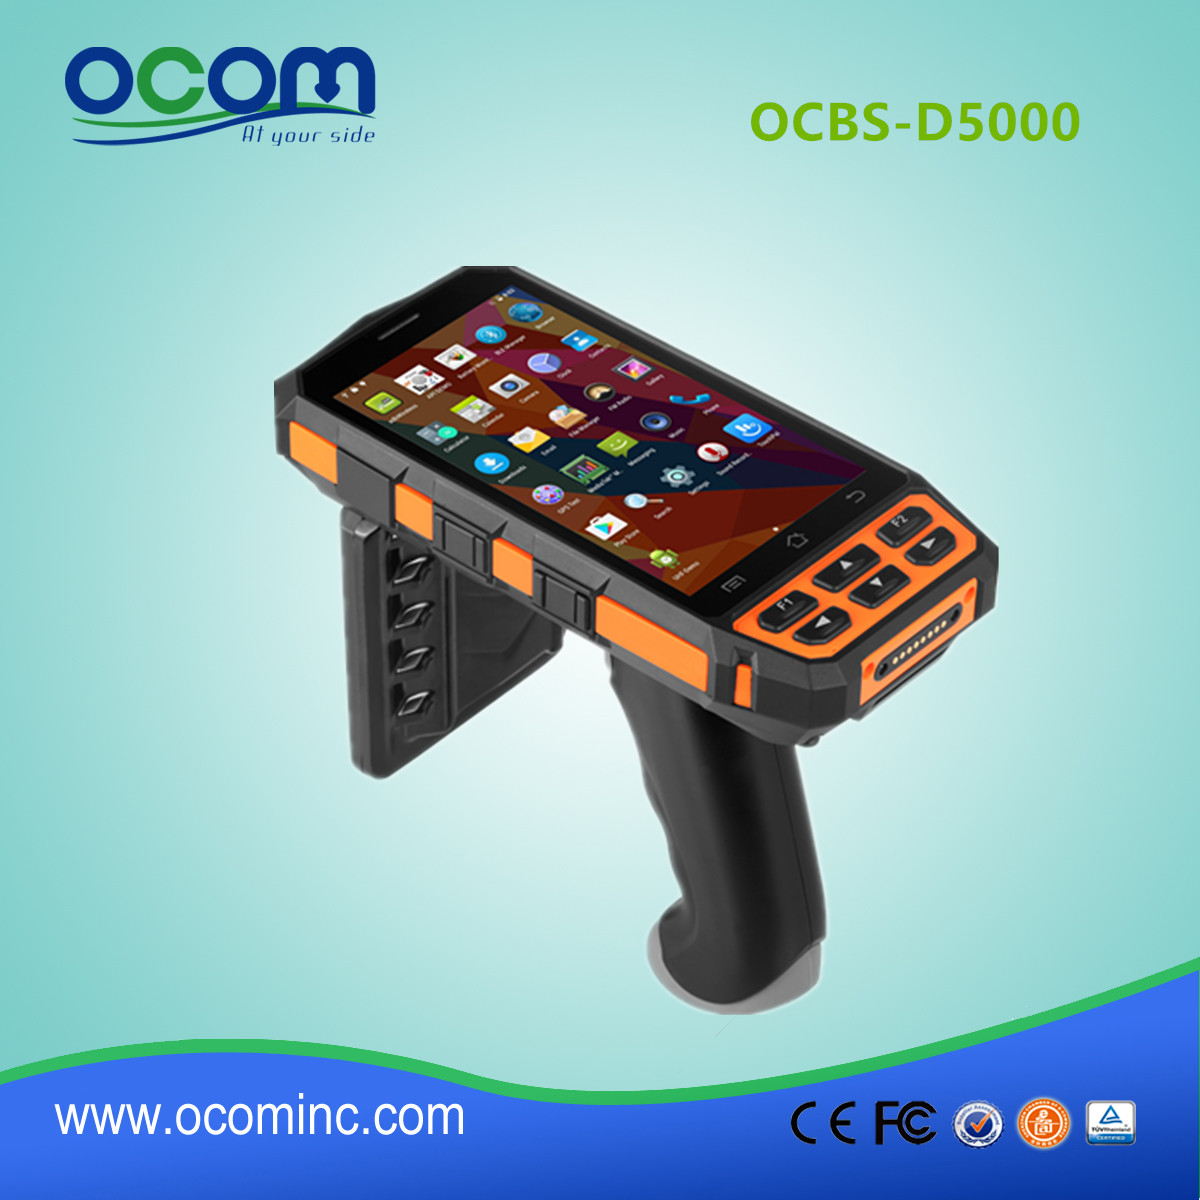 OCBS-D5000 restauracja podręczny, wytrzymały czytnik RFID z przemysłowym systemem operacyjnym Android